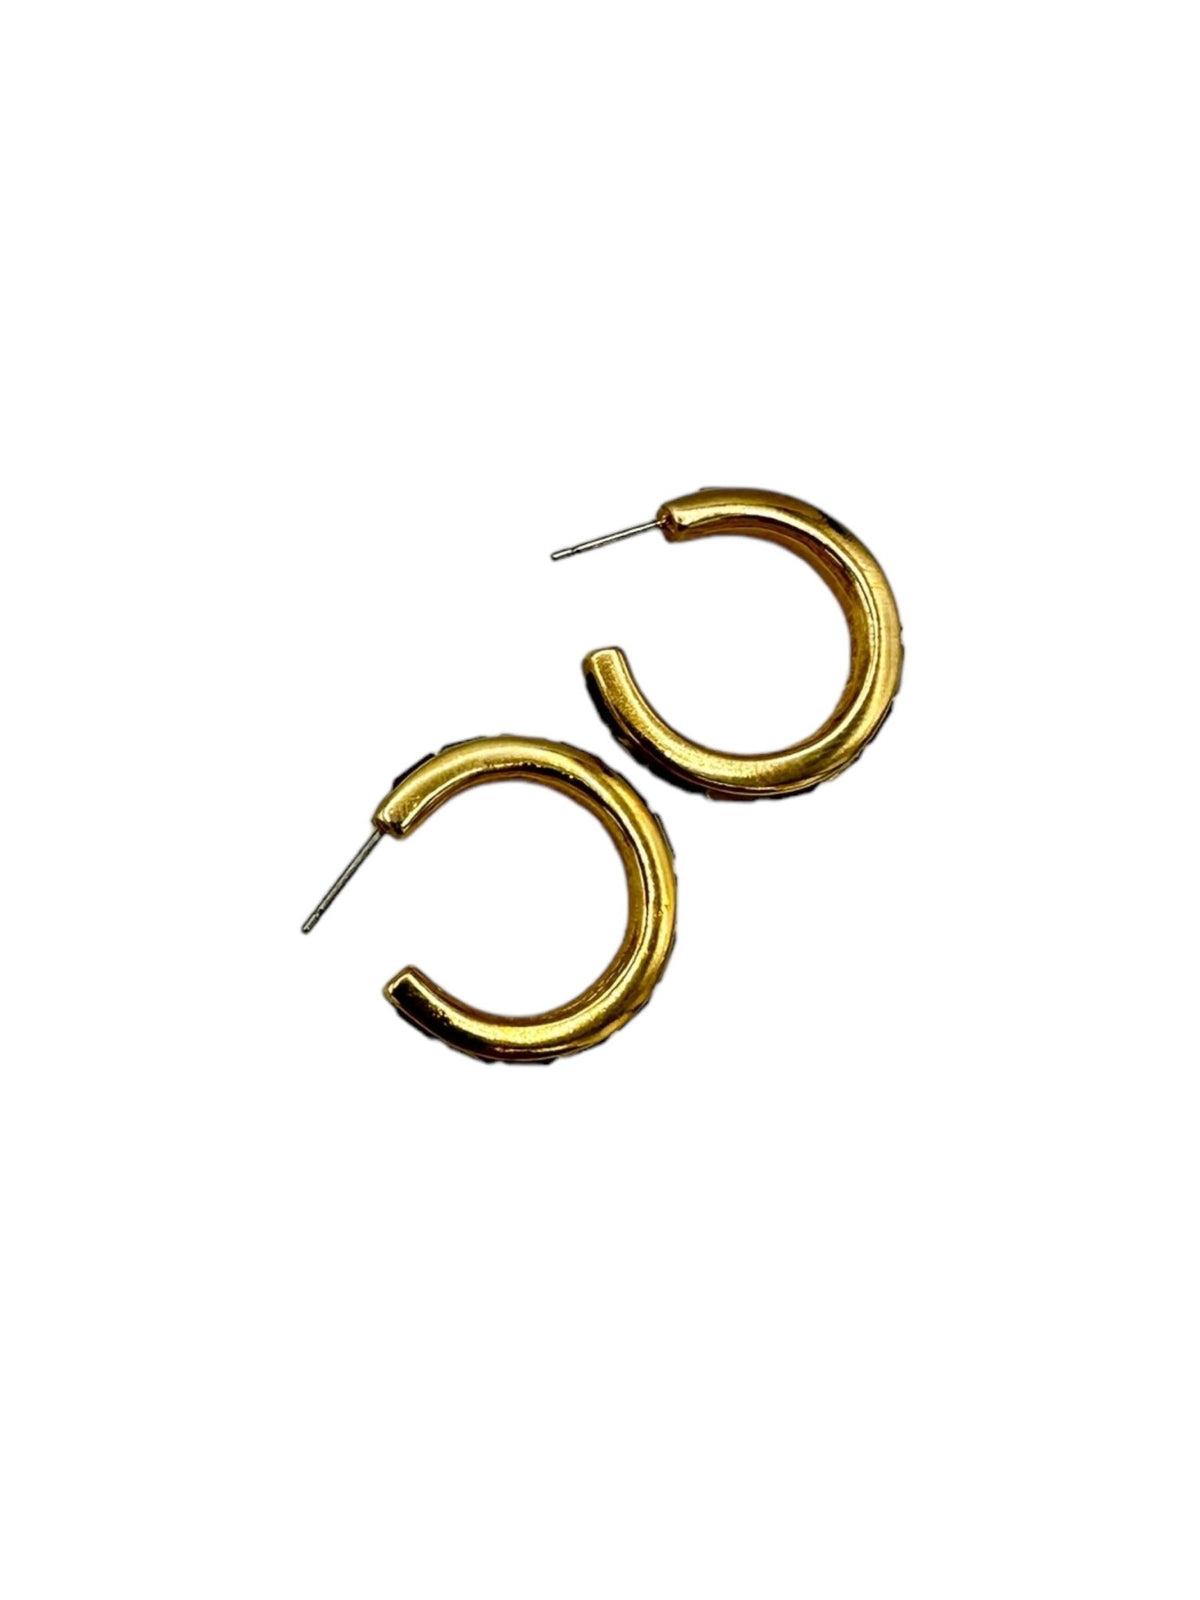 Gold SAL Swarovski Clear & Red Crystal Rhinestone Pierced Hoop Earrings - 24 Wishes Vintage Jewelry